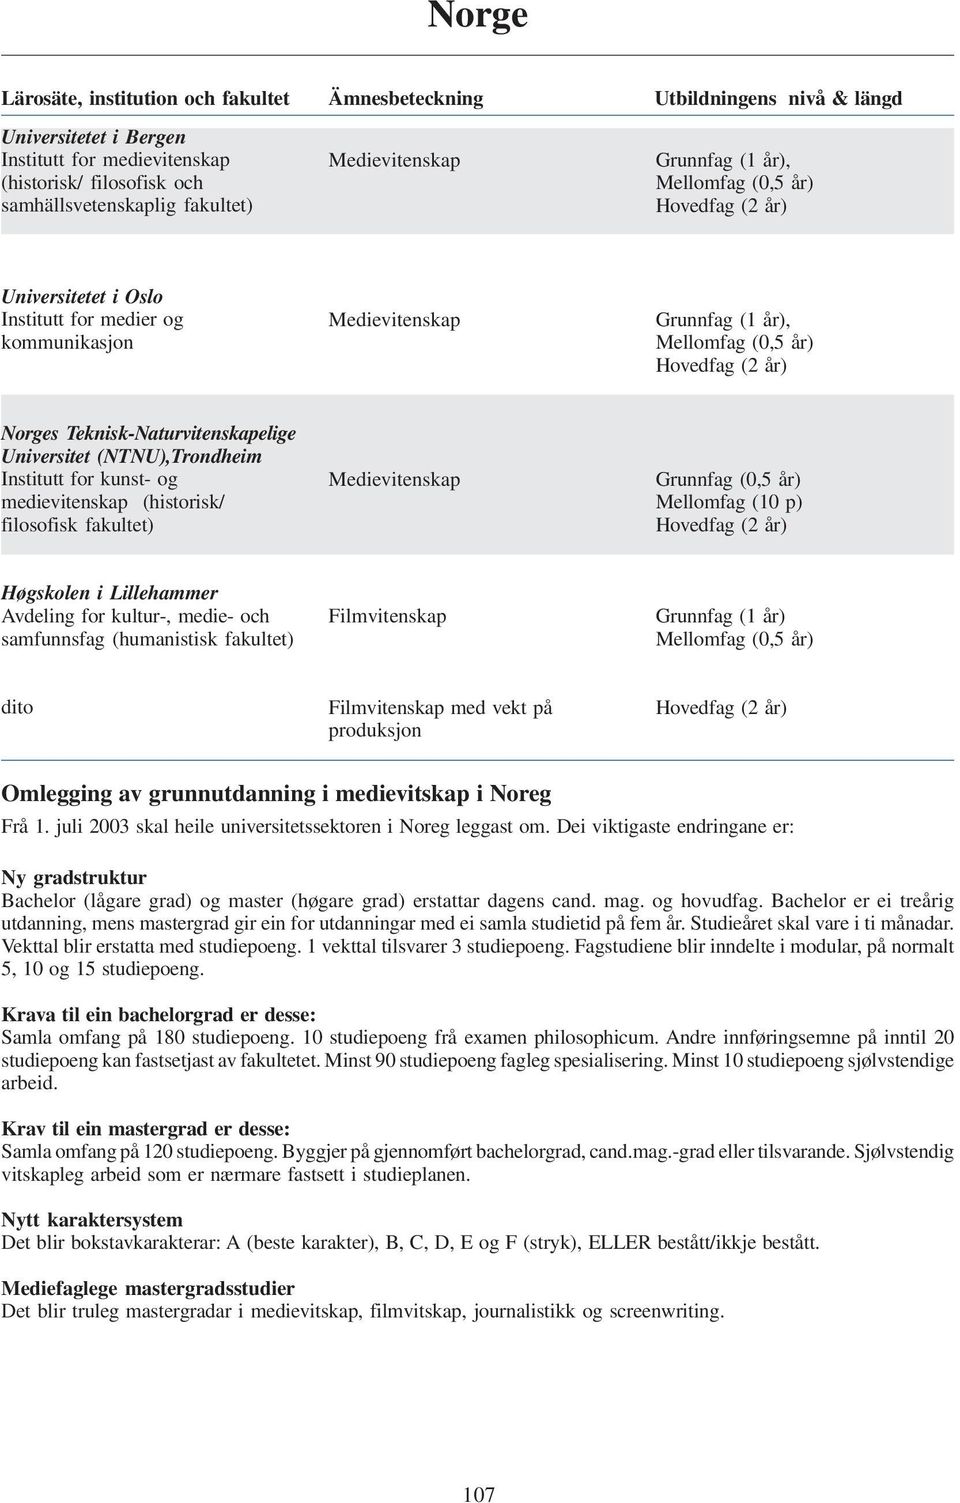 Teknisk-Naturvitenskapelige Universitet (NTNU),Trondheim Institutt for kunst- og medievitenskap (historisk/ filosofisk fakultet) Medievitenskap Grunnfag (0,5 år) Mellomfag (10 p) Hovedfag (2 år)